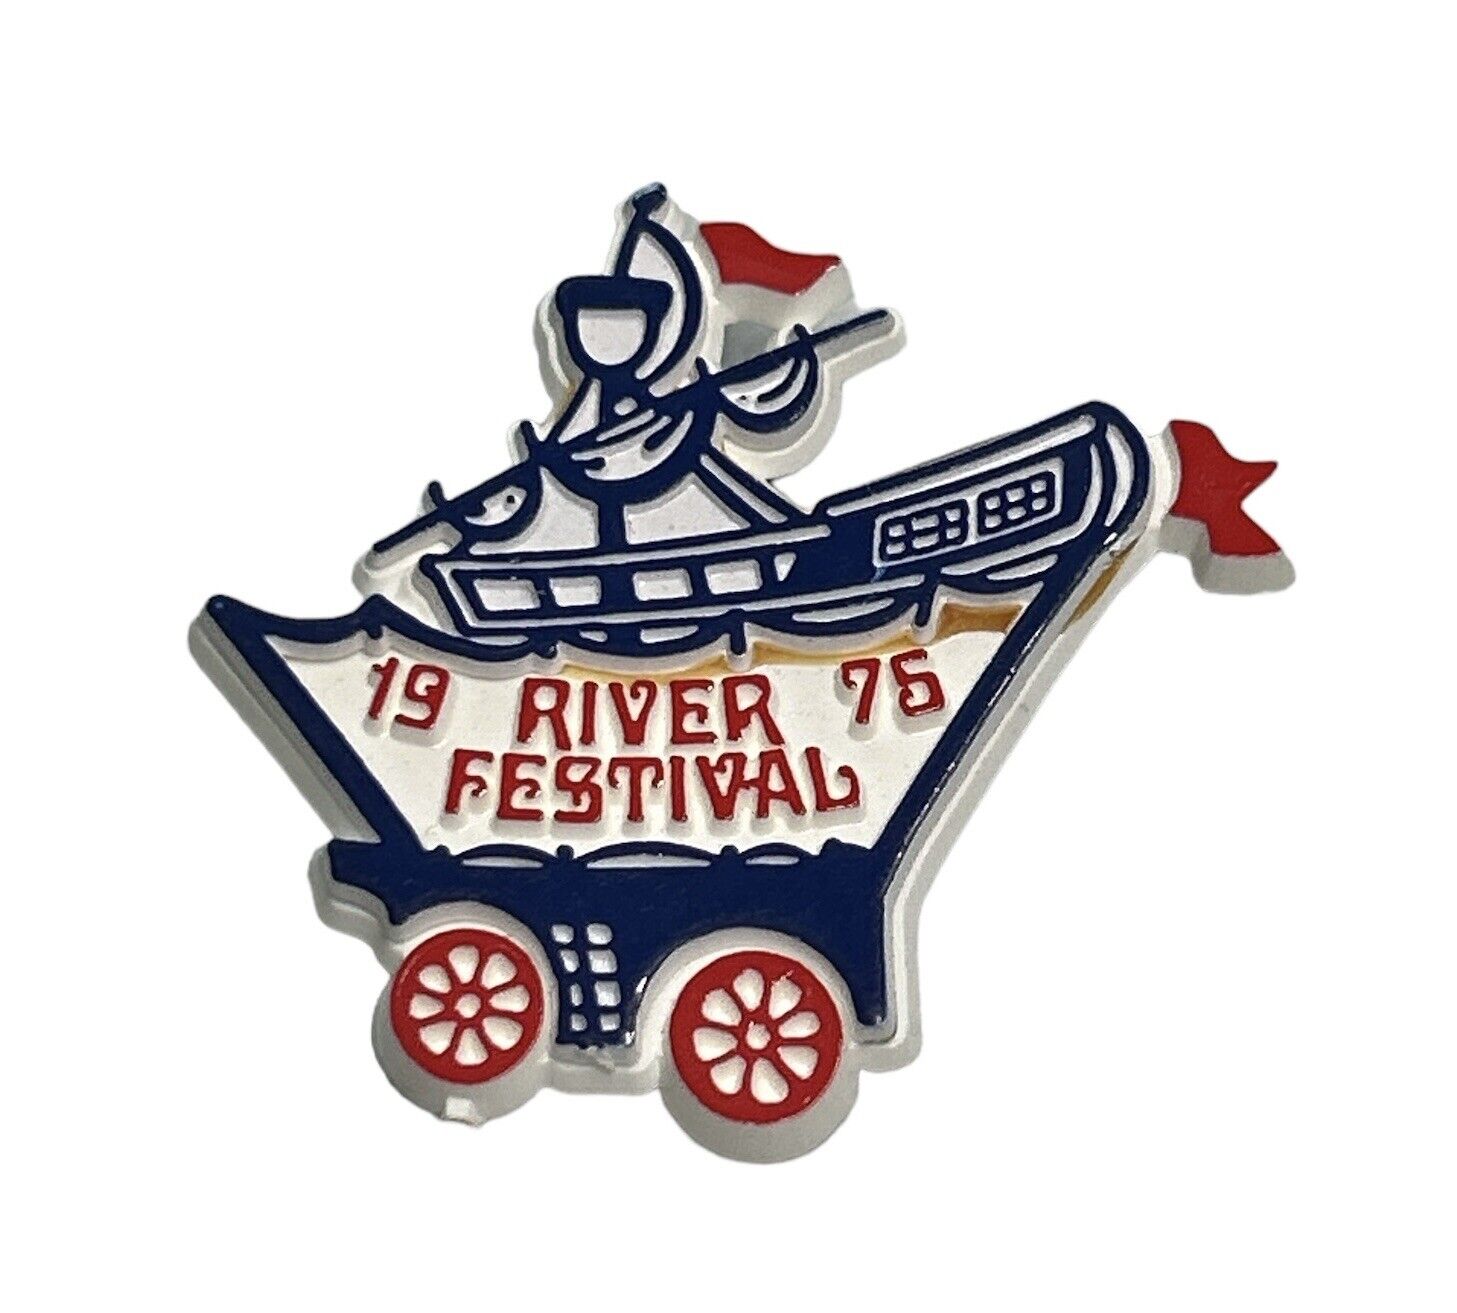 Rare 1975 Wichita River Festival Riverfest Button